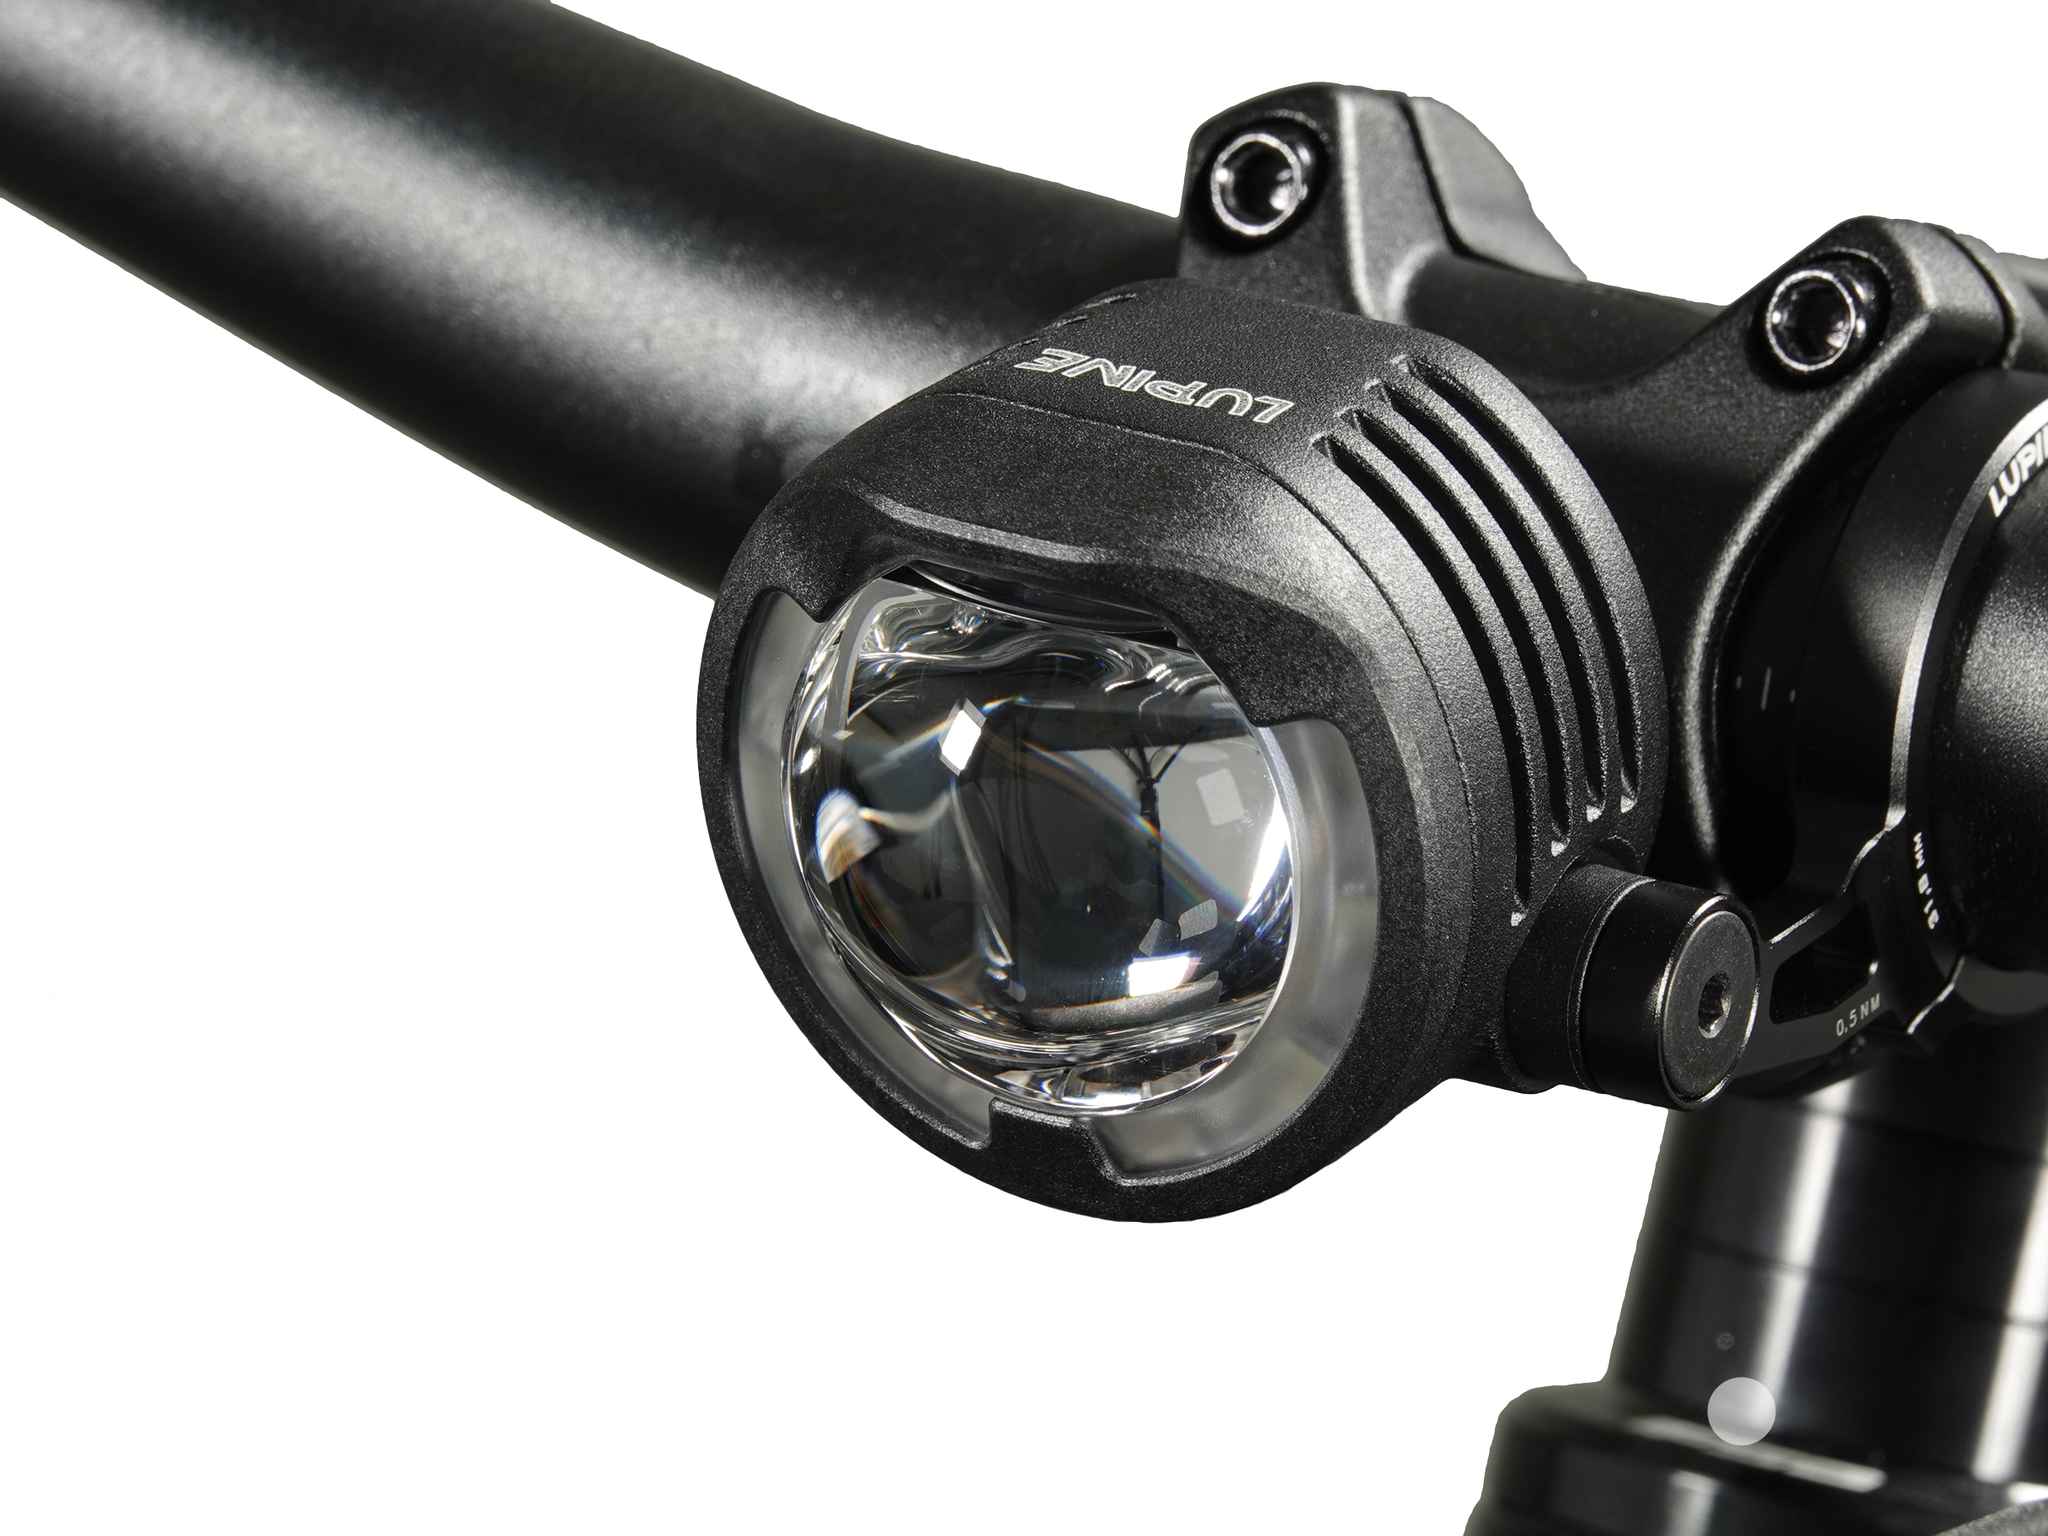 SL F BOSCH Purion/Kiox LED-Scheinwerfer mit Auf-/Abblendlicht - Hauptansicht